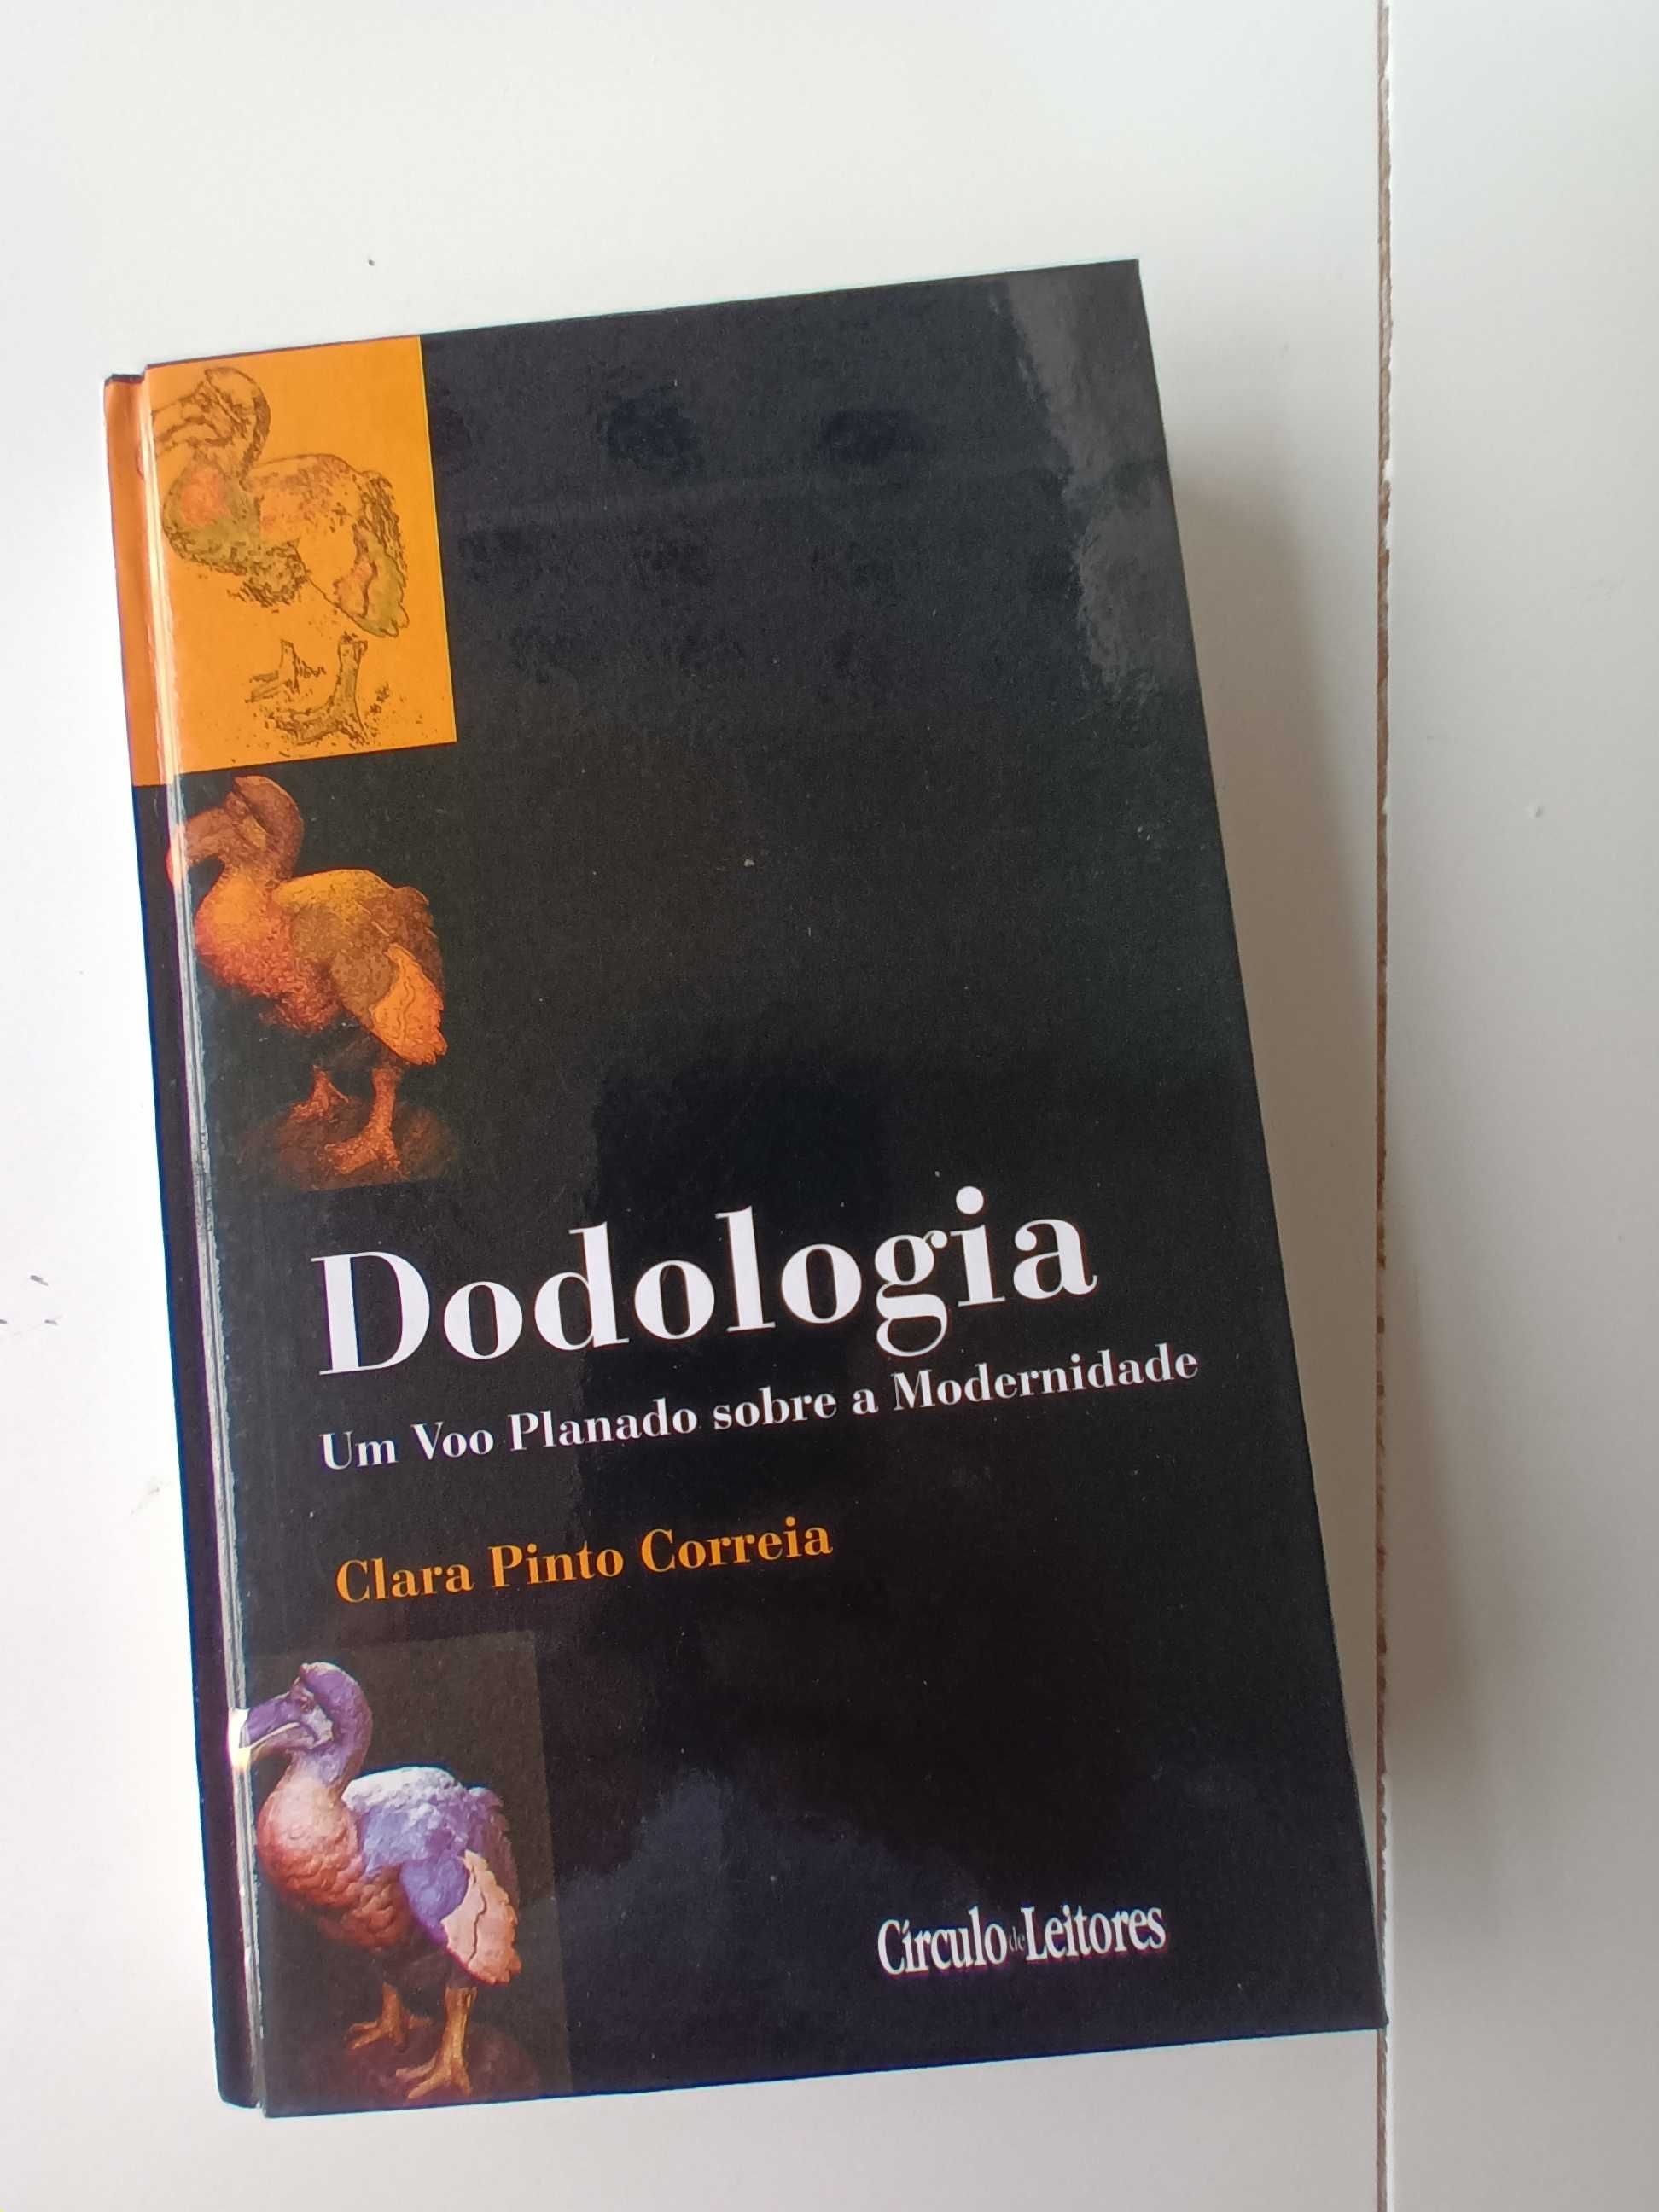 Dodologia (Clara Pino Correia )